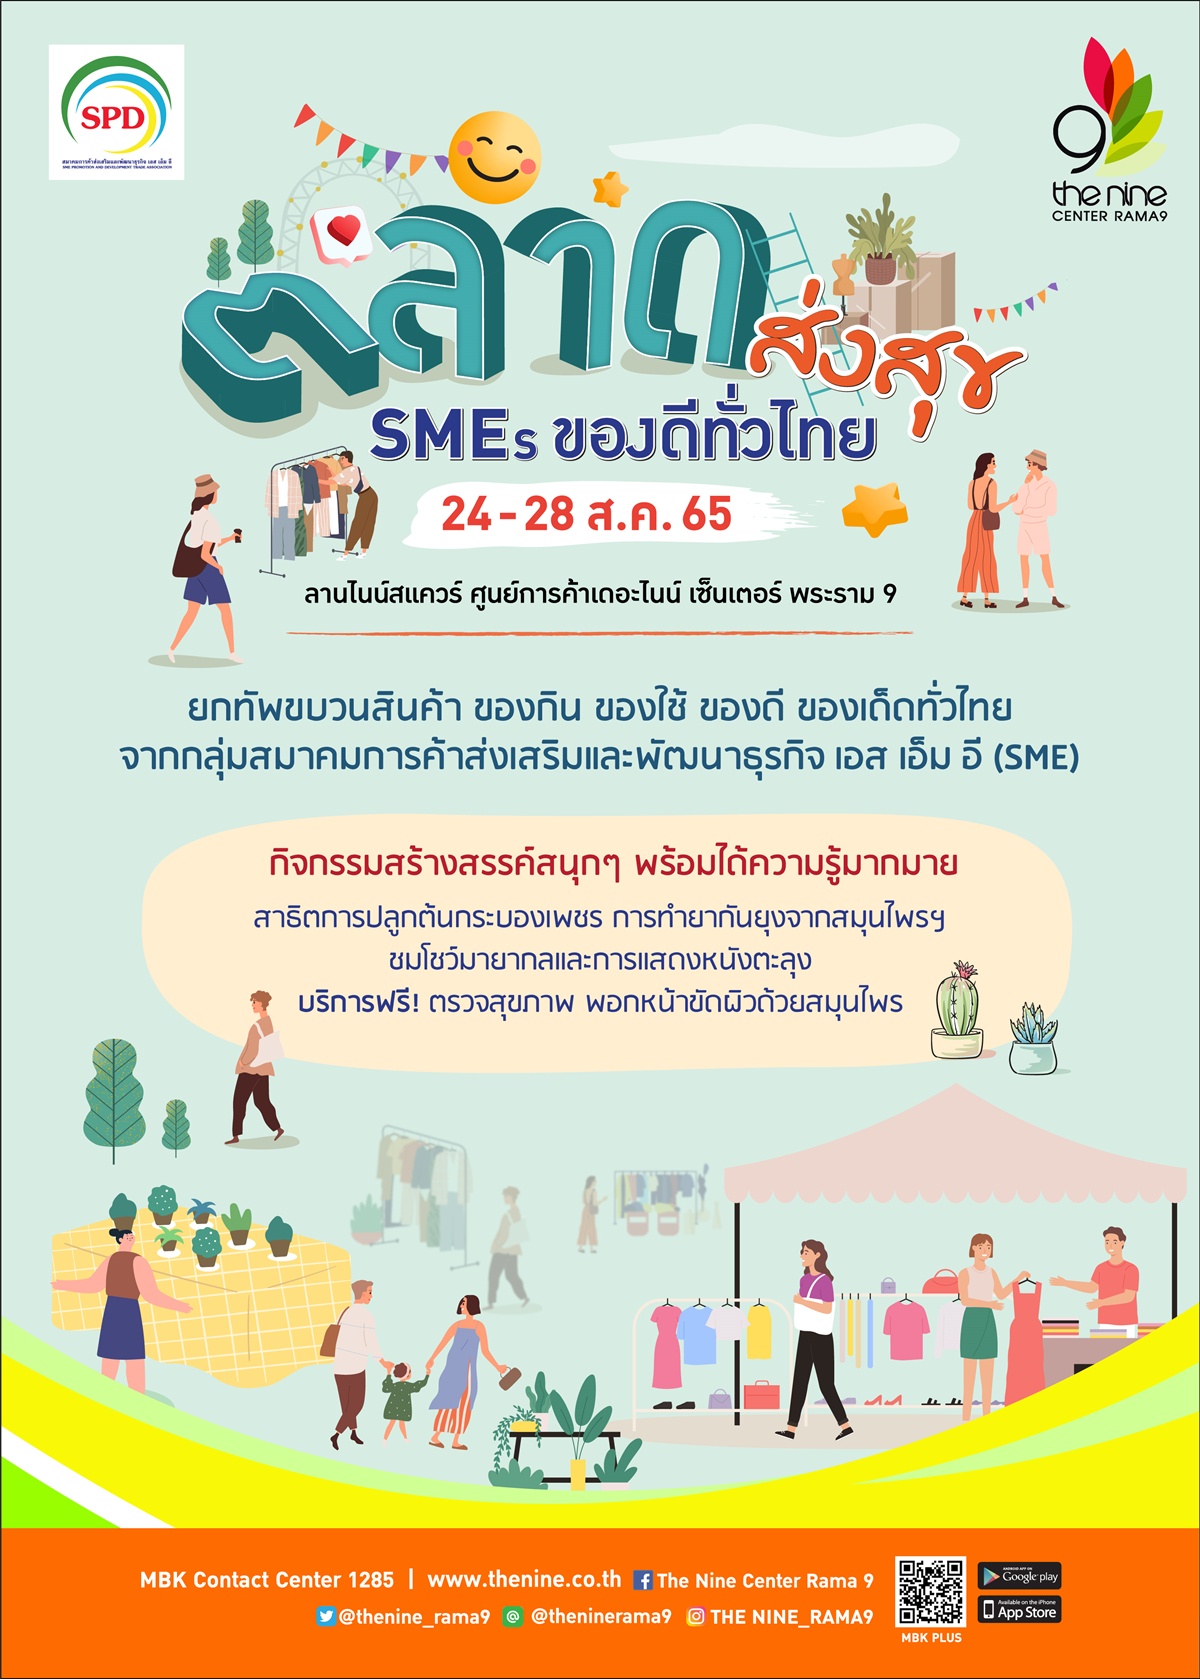 เดอะไนน์ เซ็นเตอร์ พระราม 9 พาช้อปสนุกในงาน ตลาดส่งสุข SMEs ของดีทั่วไทย